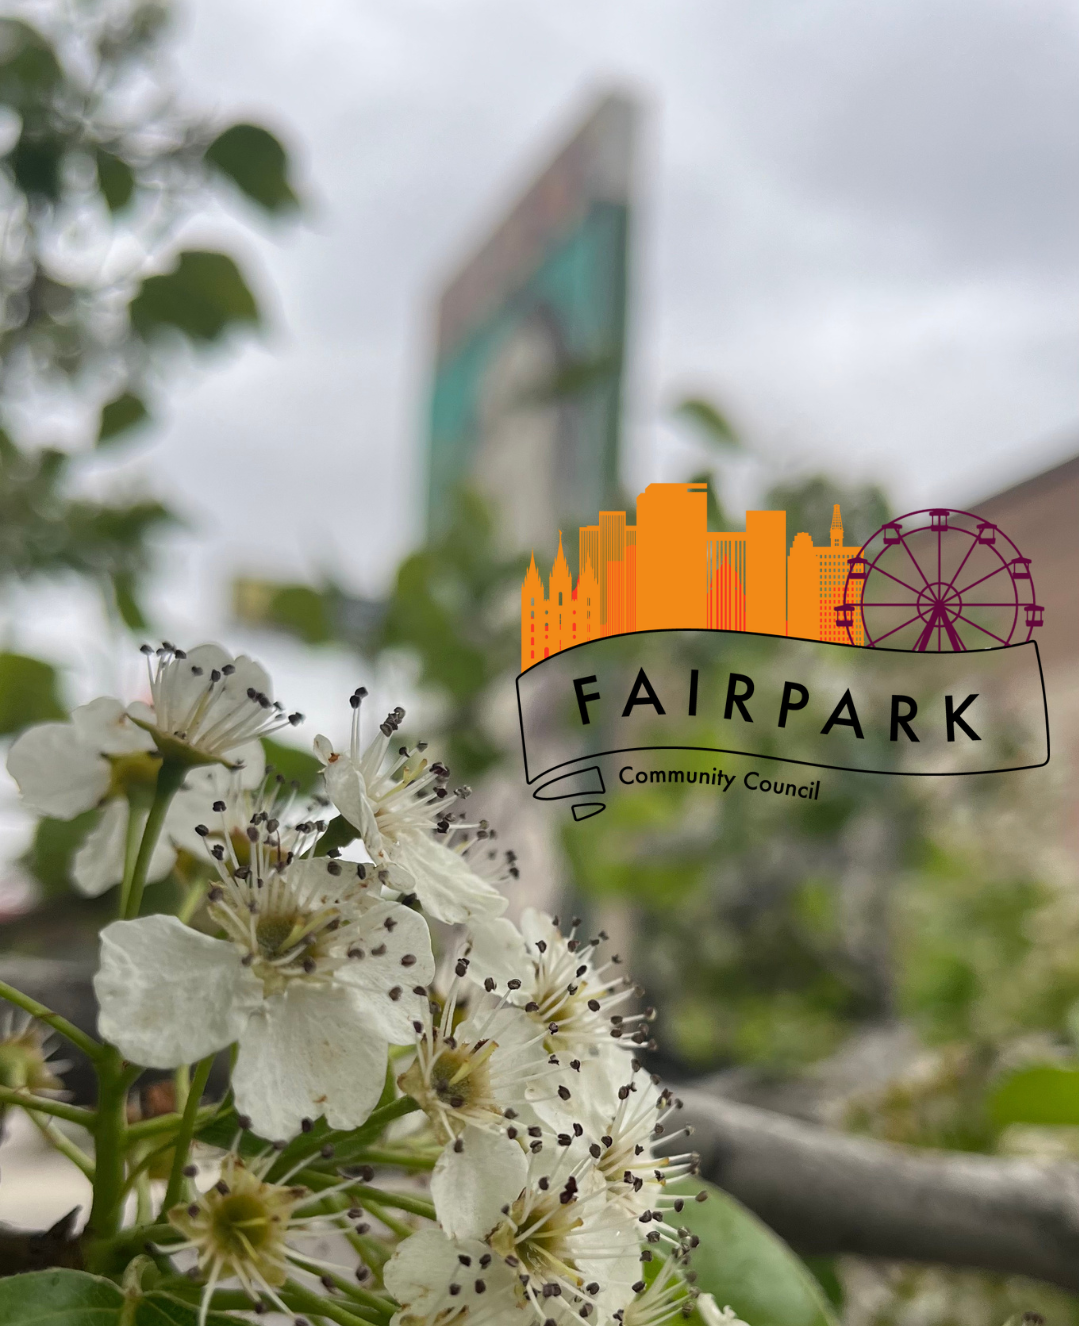 Fairpark Community